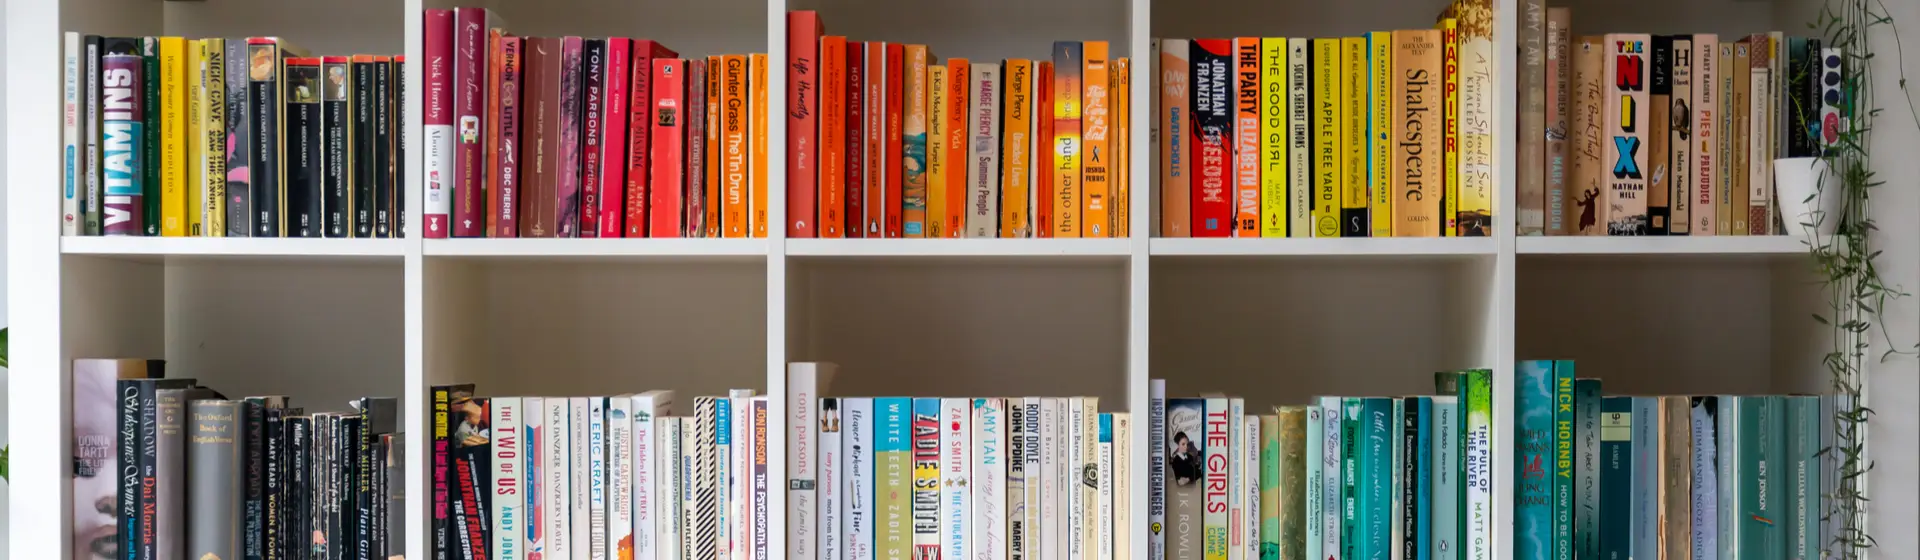 Estantes para livros: cinco modelos para organizar e decorar o lar